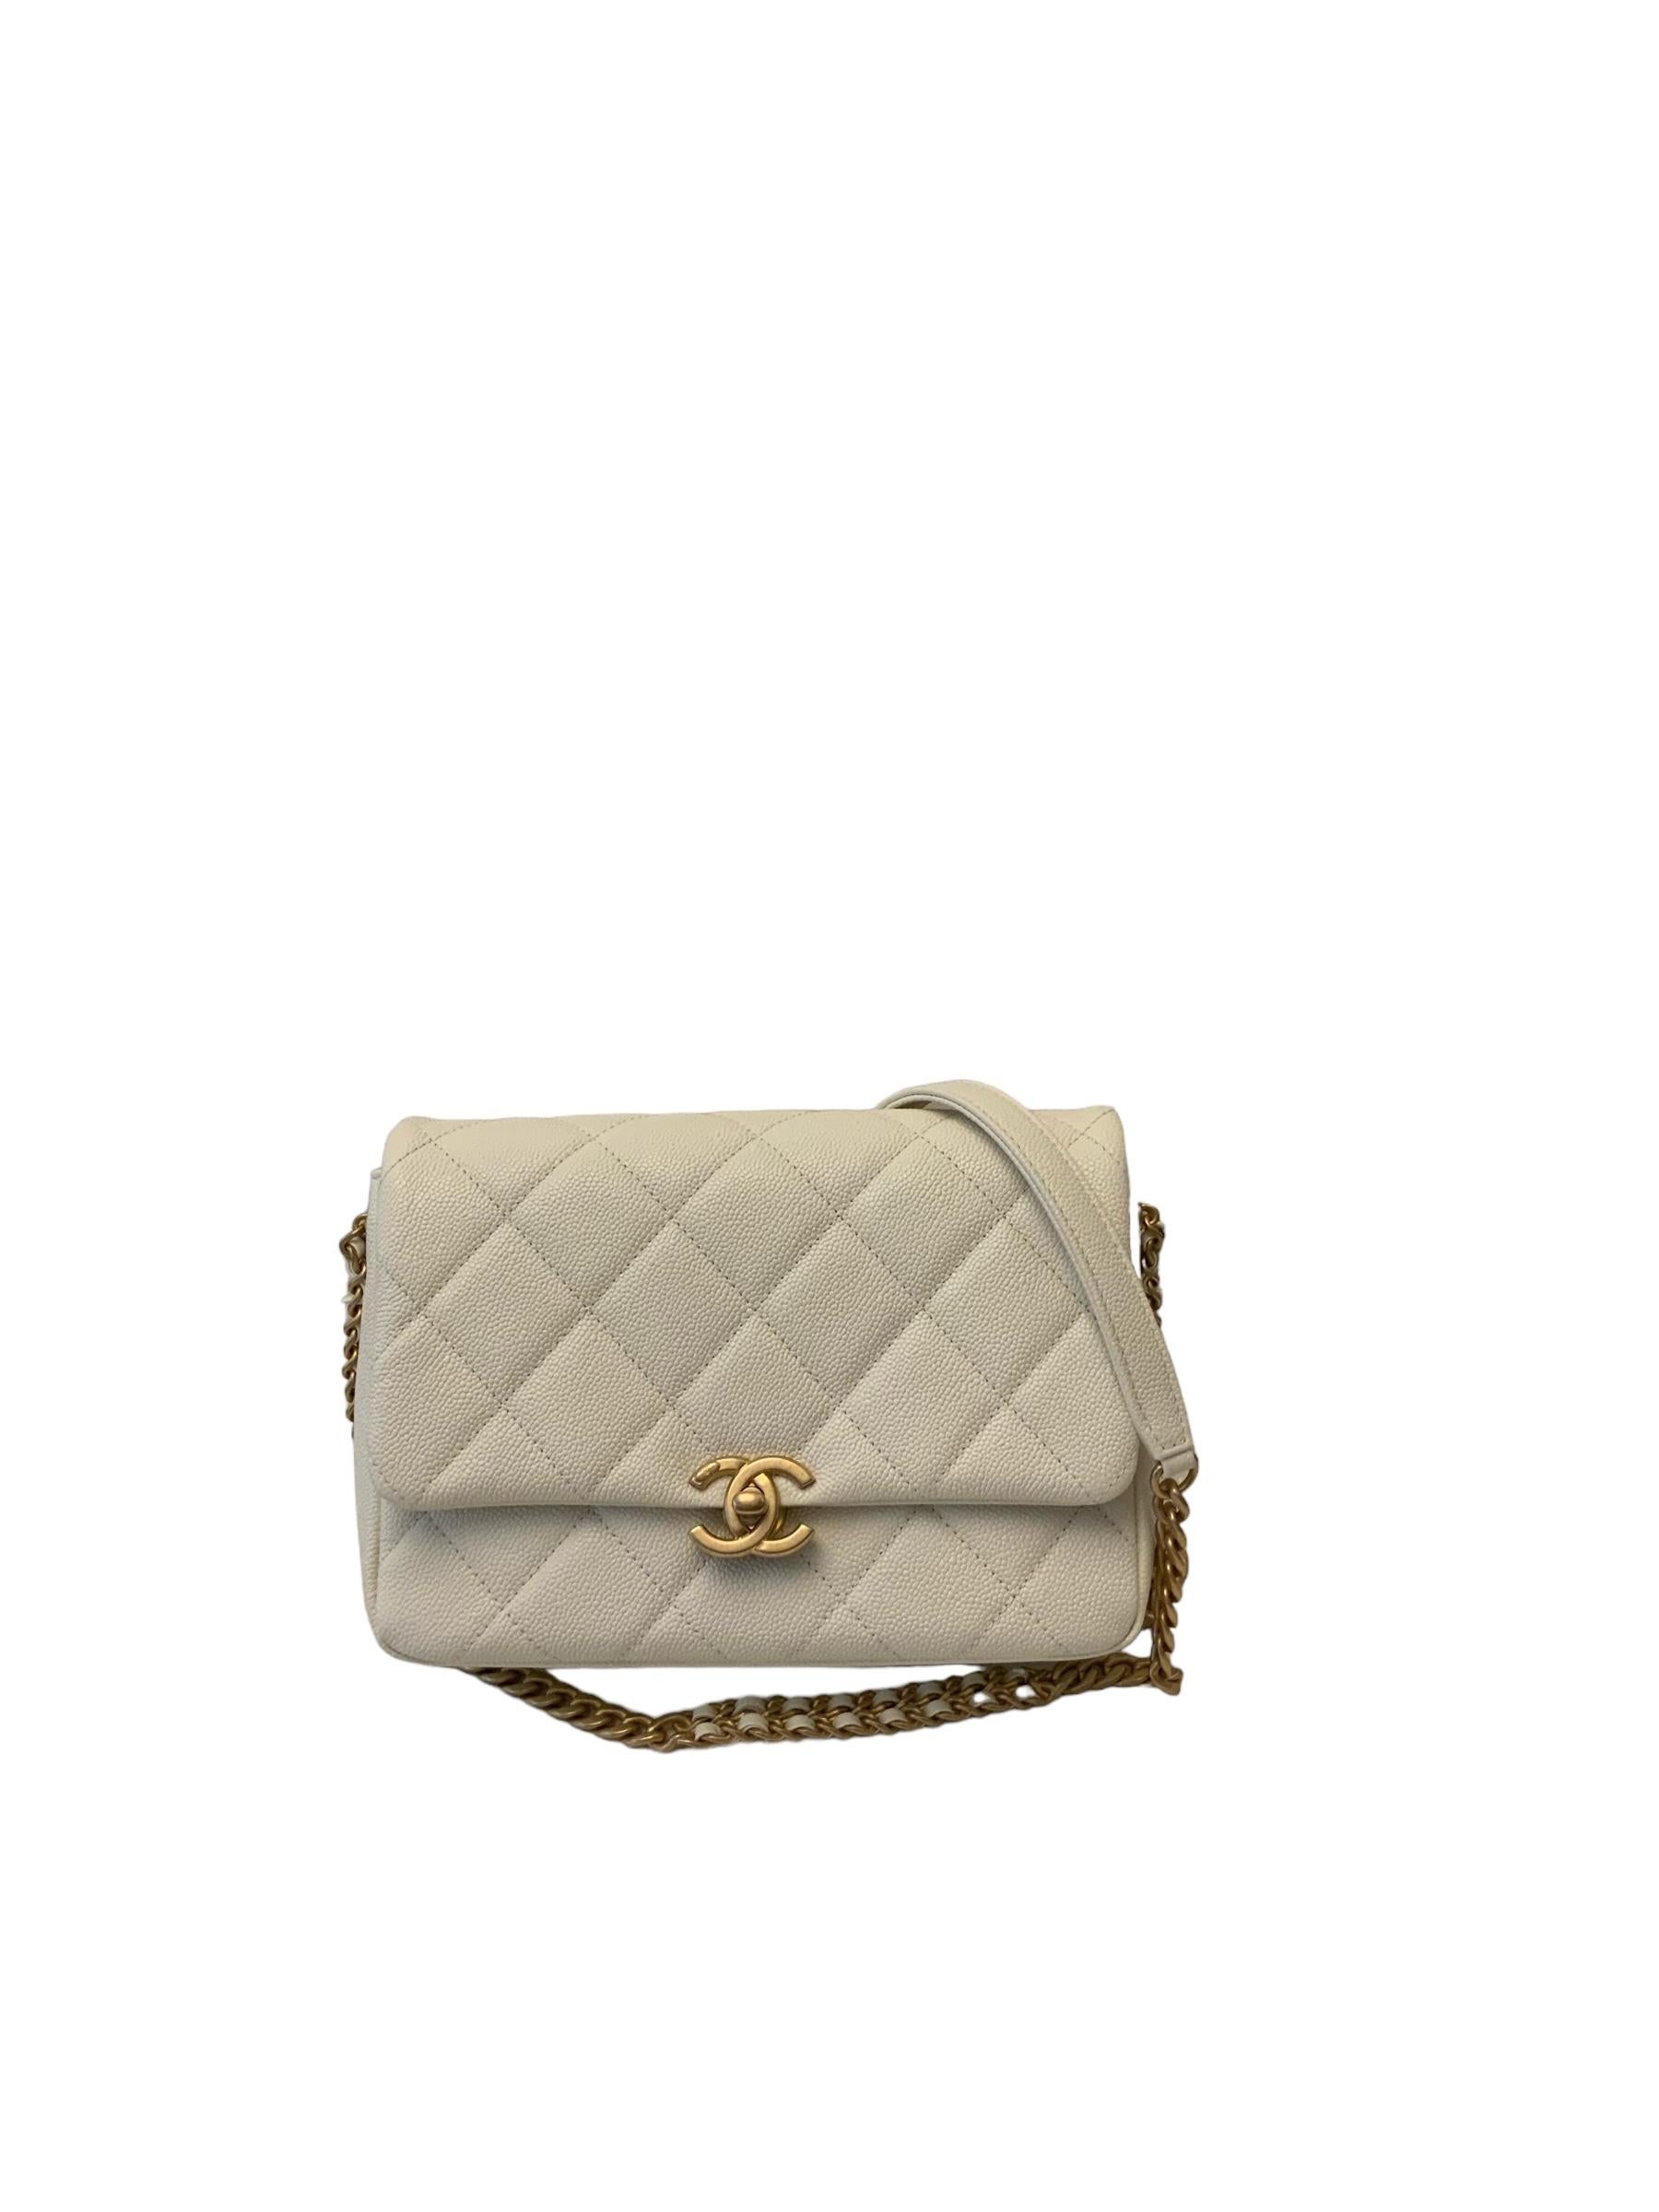 Chanel 22P Melody Flap White Caviar Petit sac  6